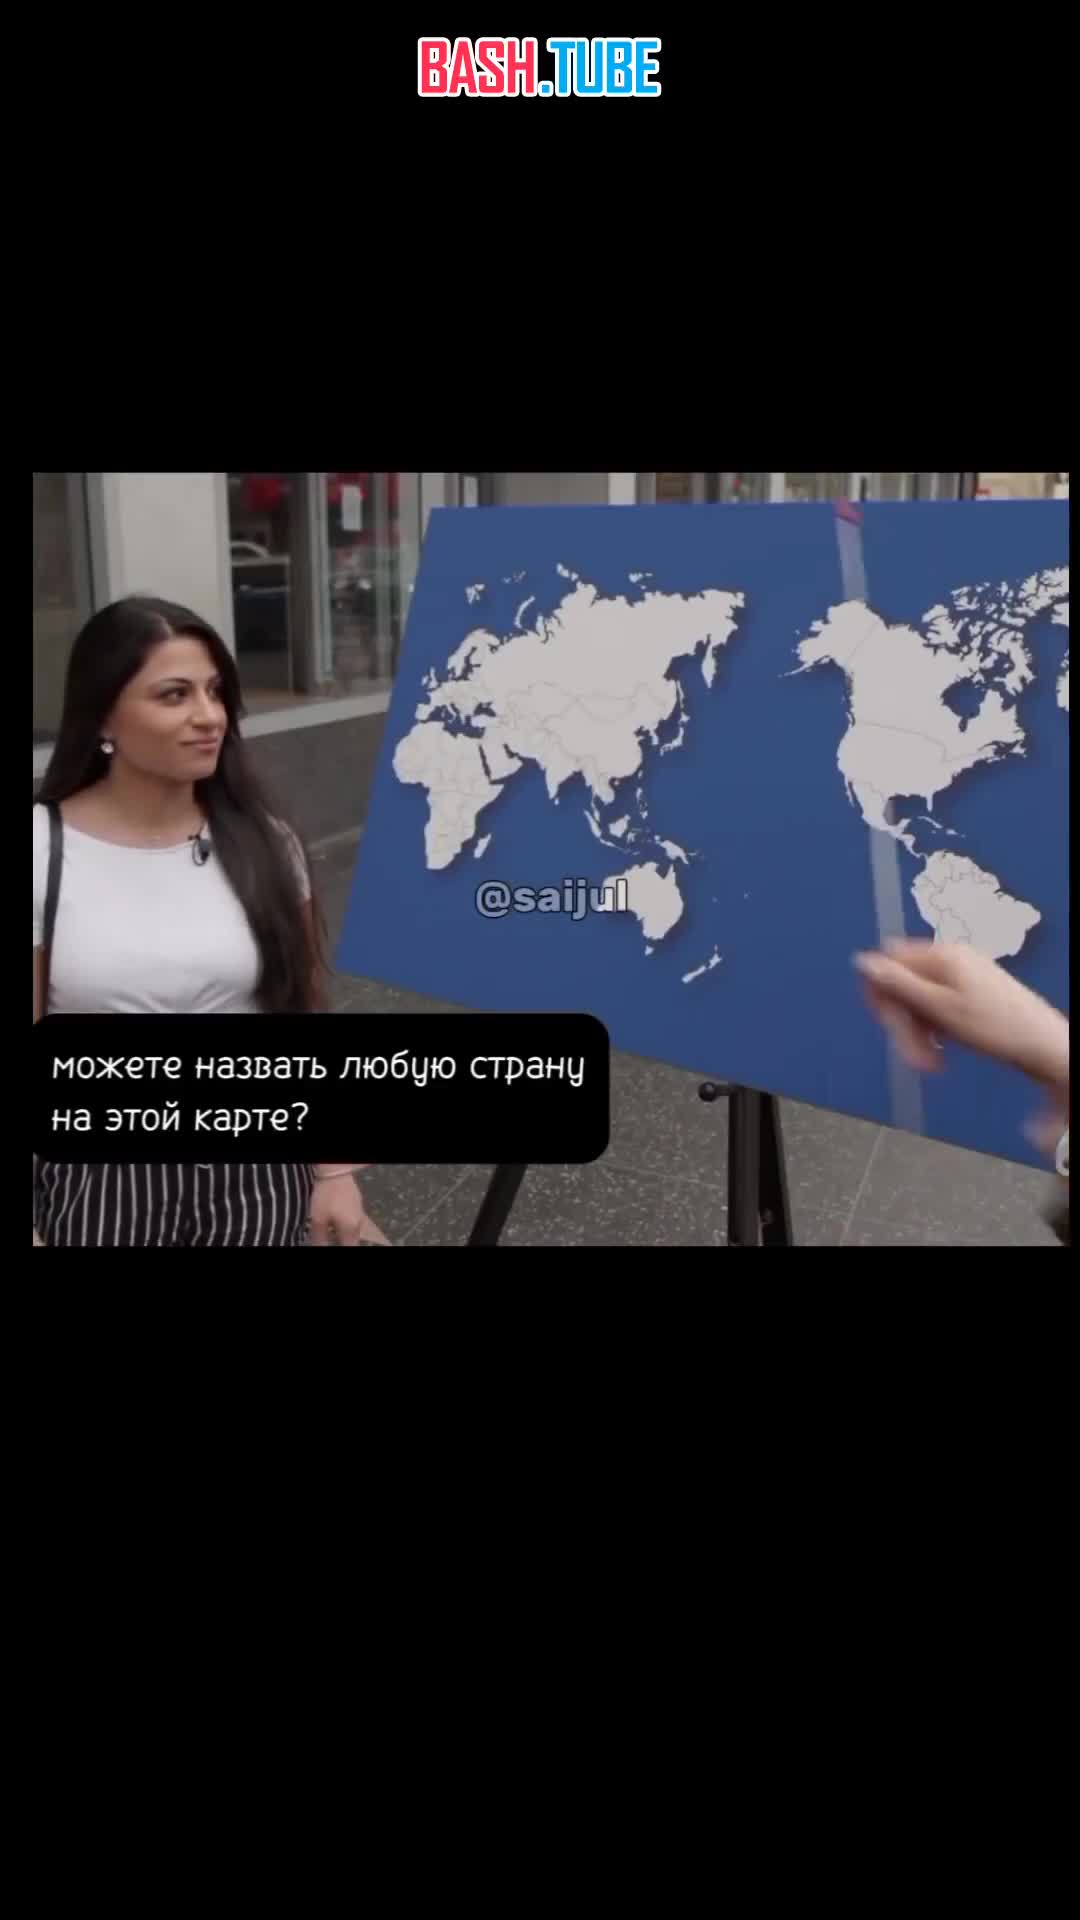  Американцы не смогли показать на карте мира ни одной страны. Даже США